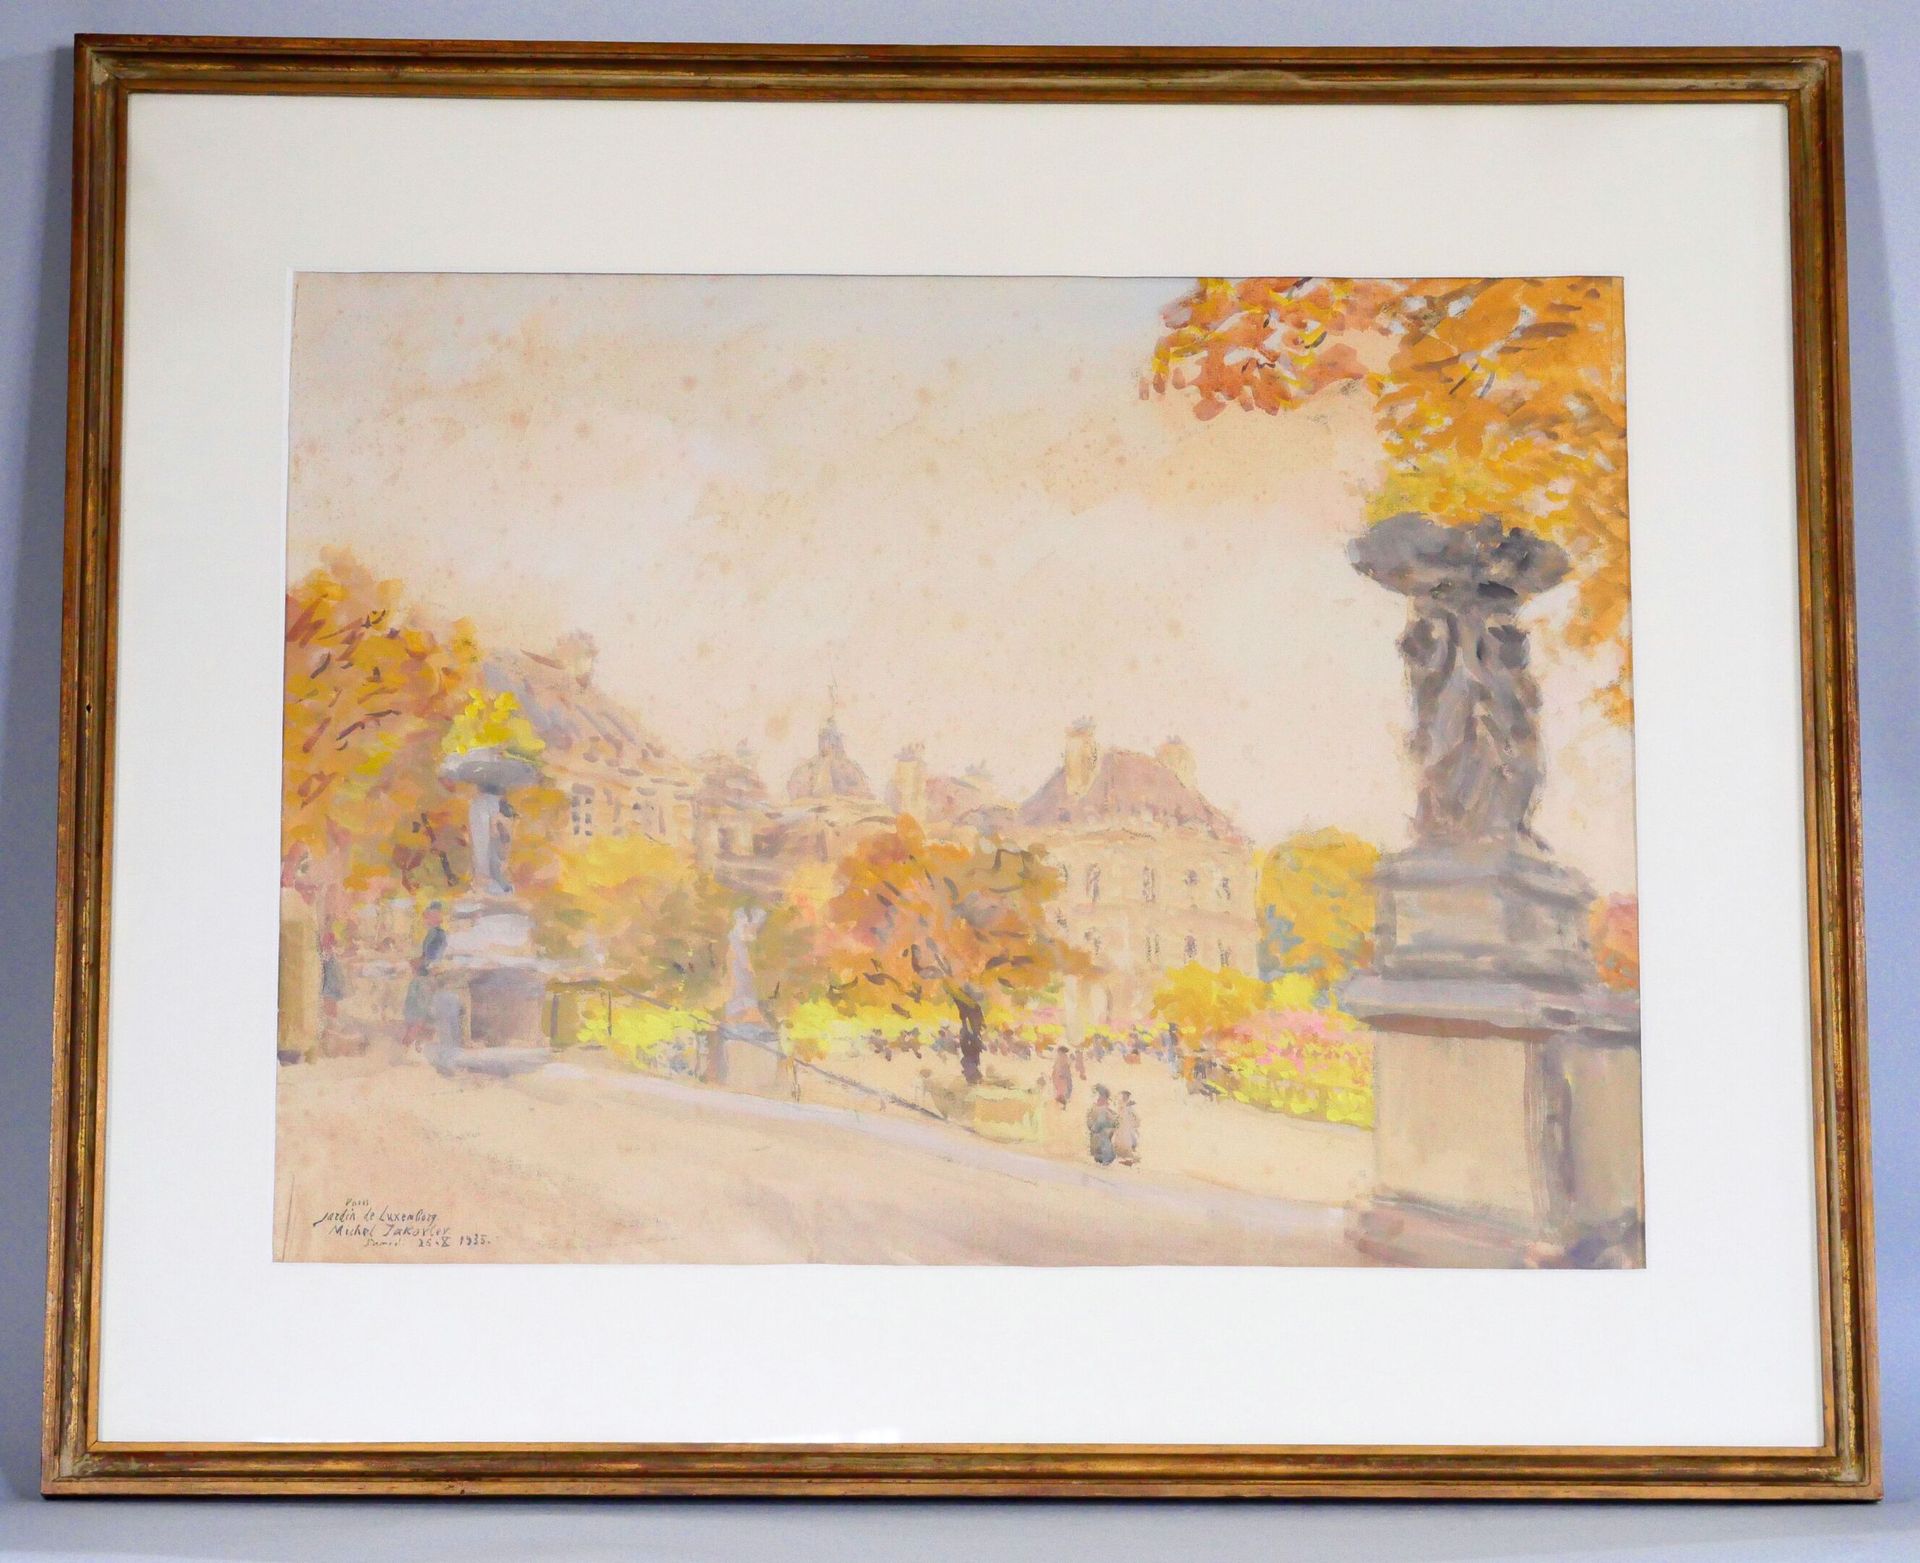 Null 米哈伊尔-尼古拉耶维奇-亚科夫列夫 (1880-1942)
卢森堡花园 
纸上水彩画，左下角有签名、位置和日期 "1935年10月26日星期六"。 
&hellip;